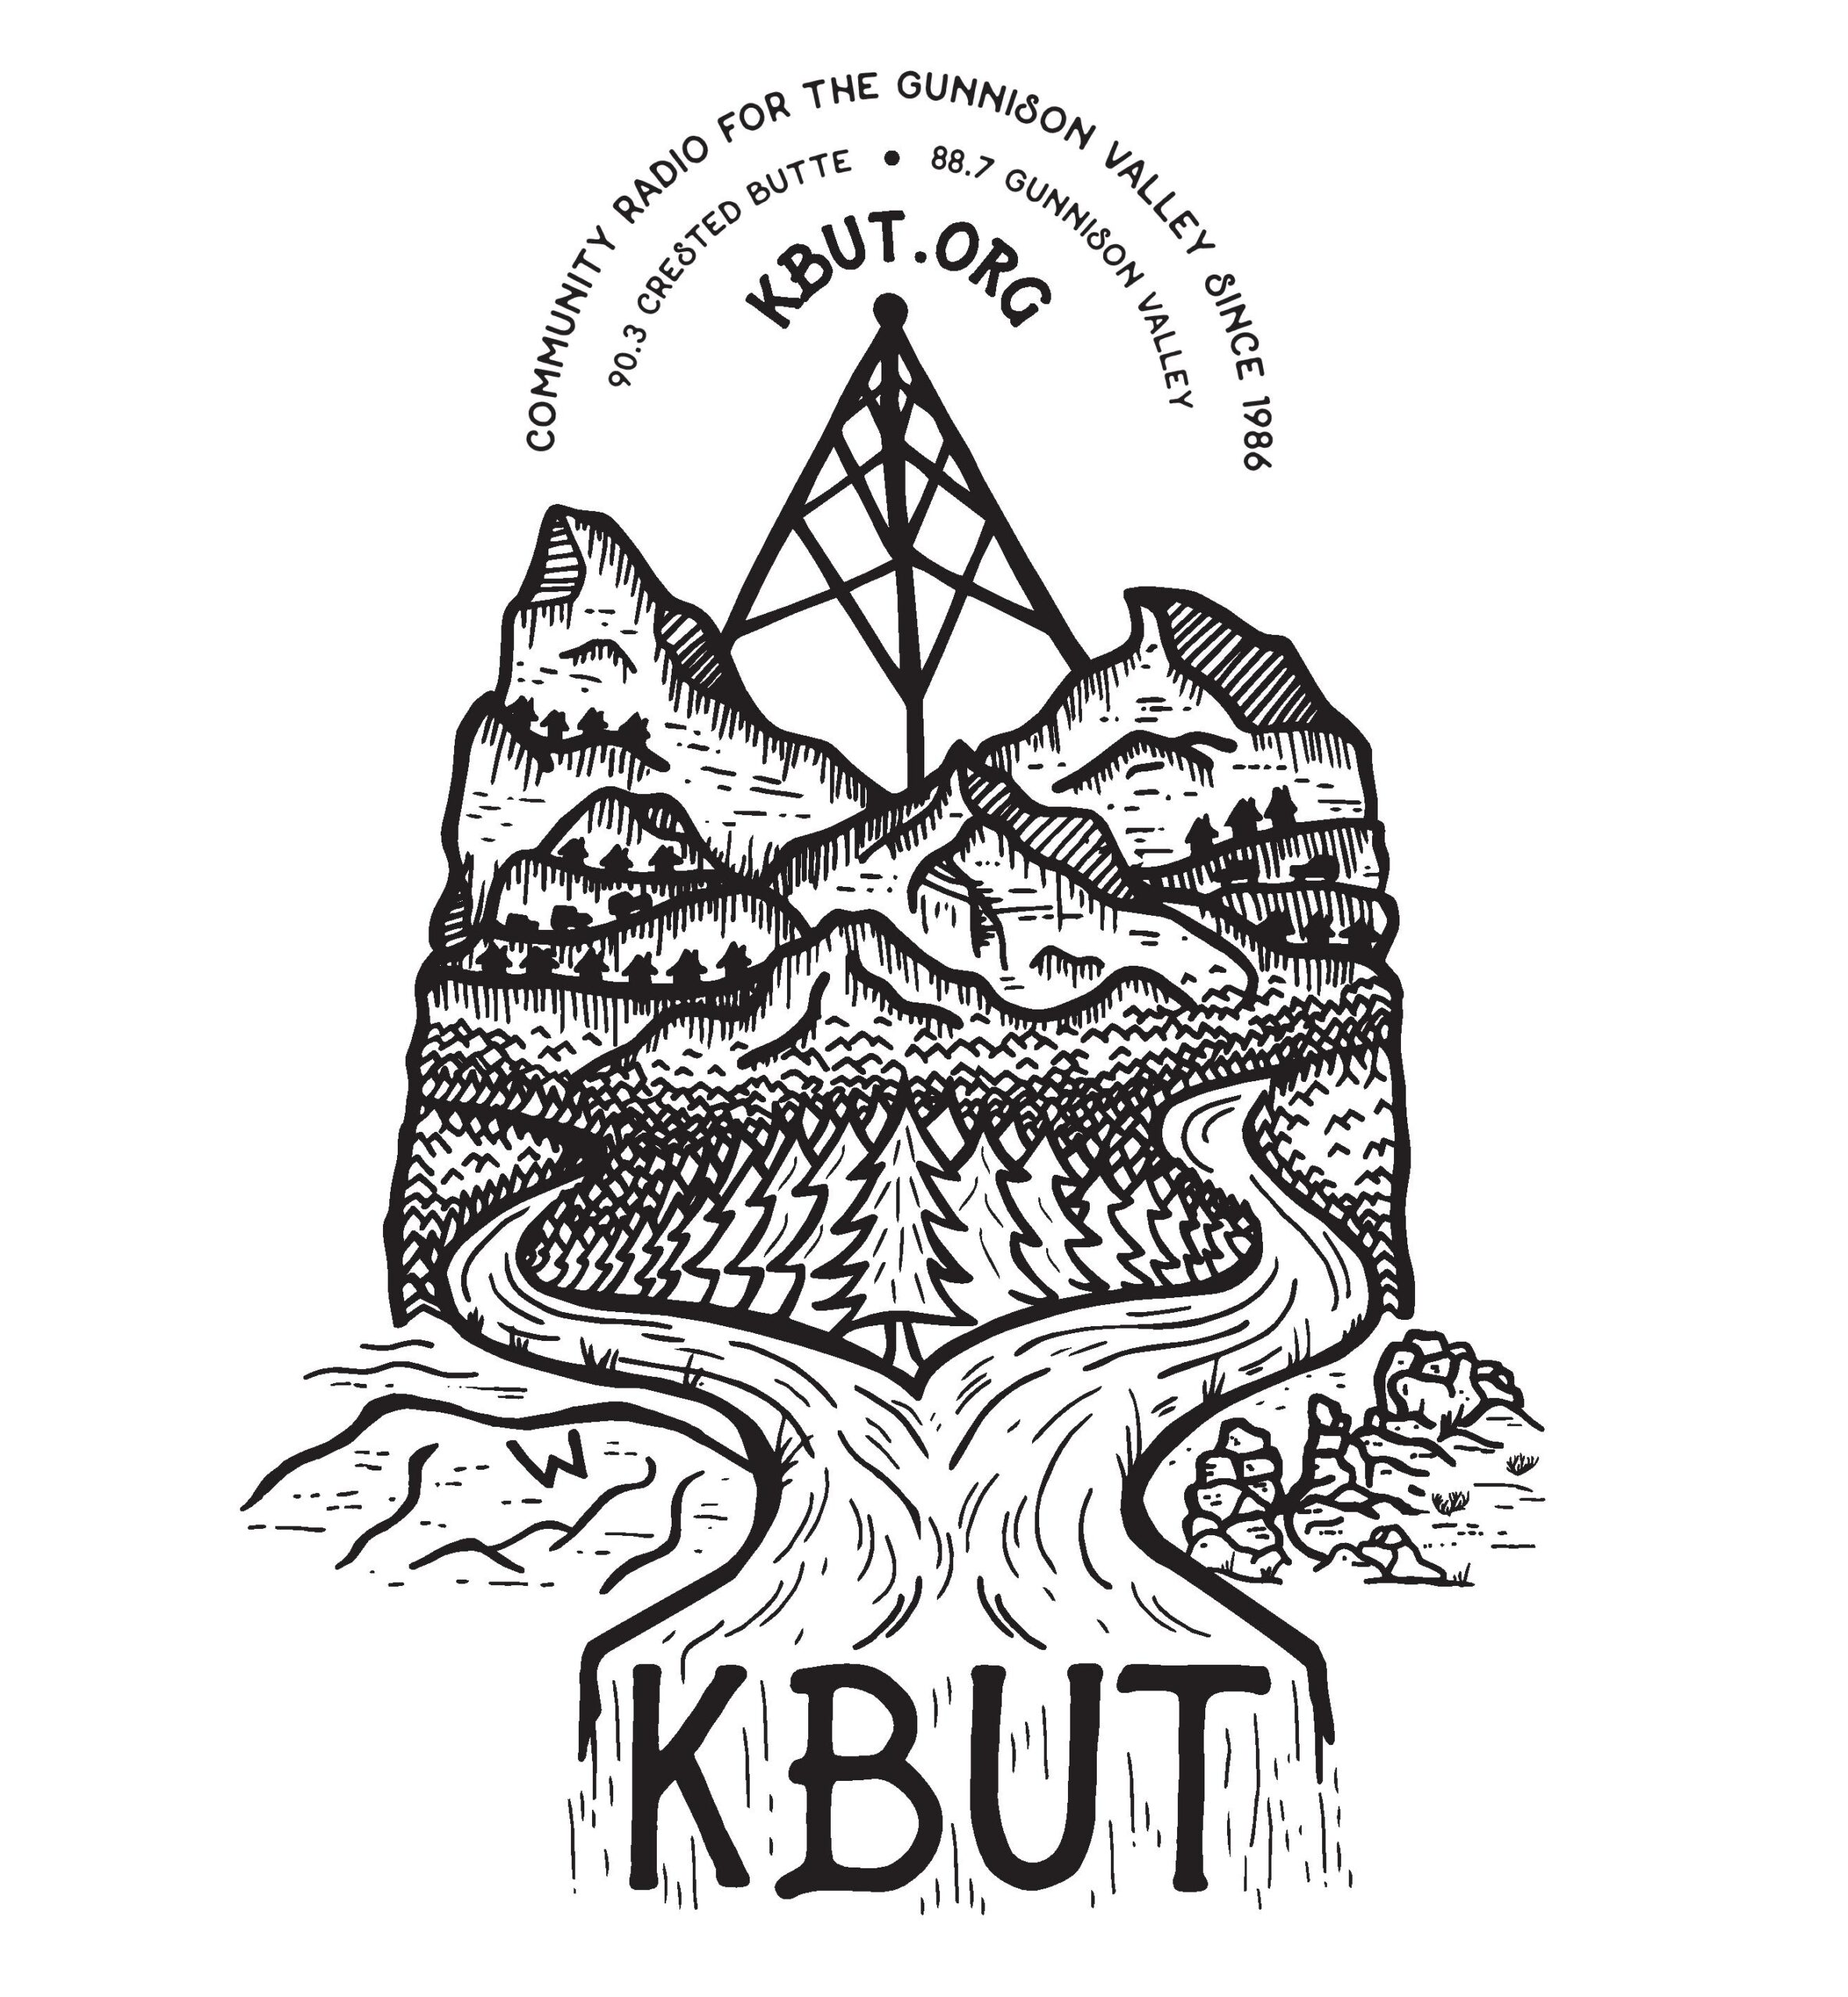 (c) Kbut.org